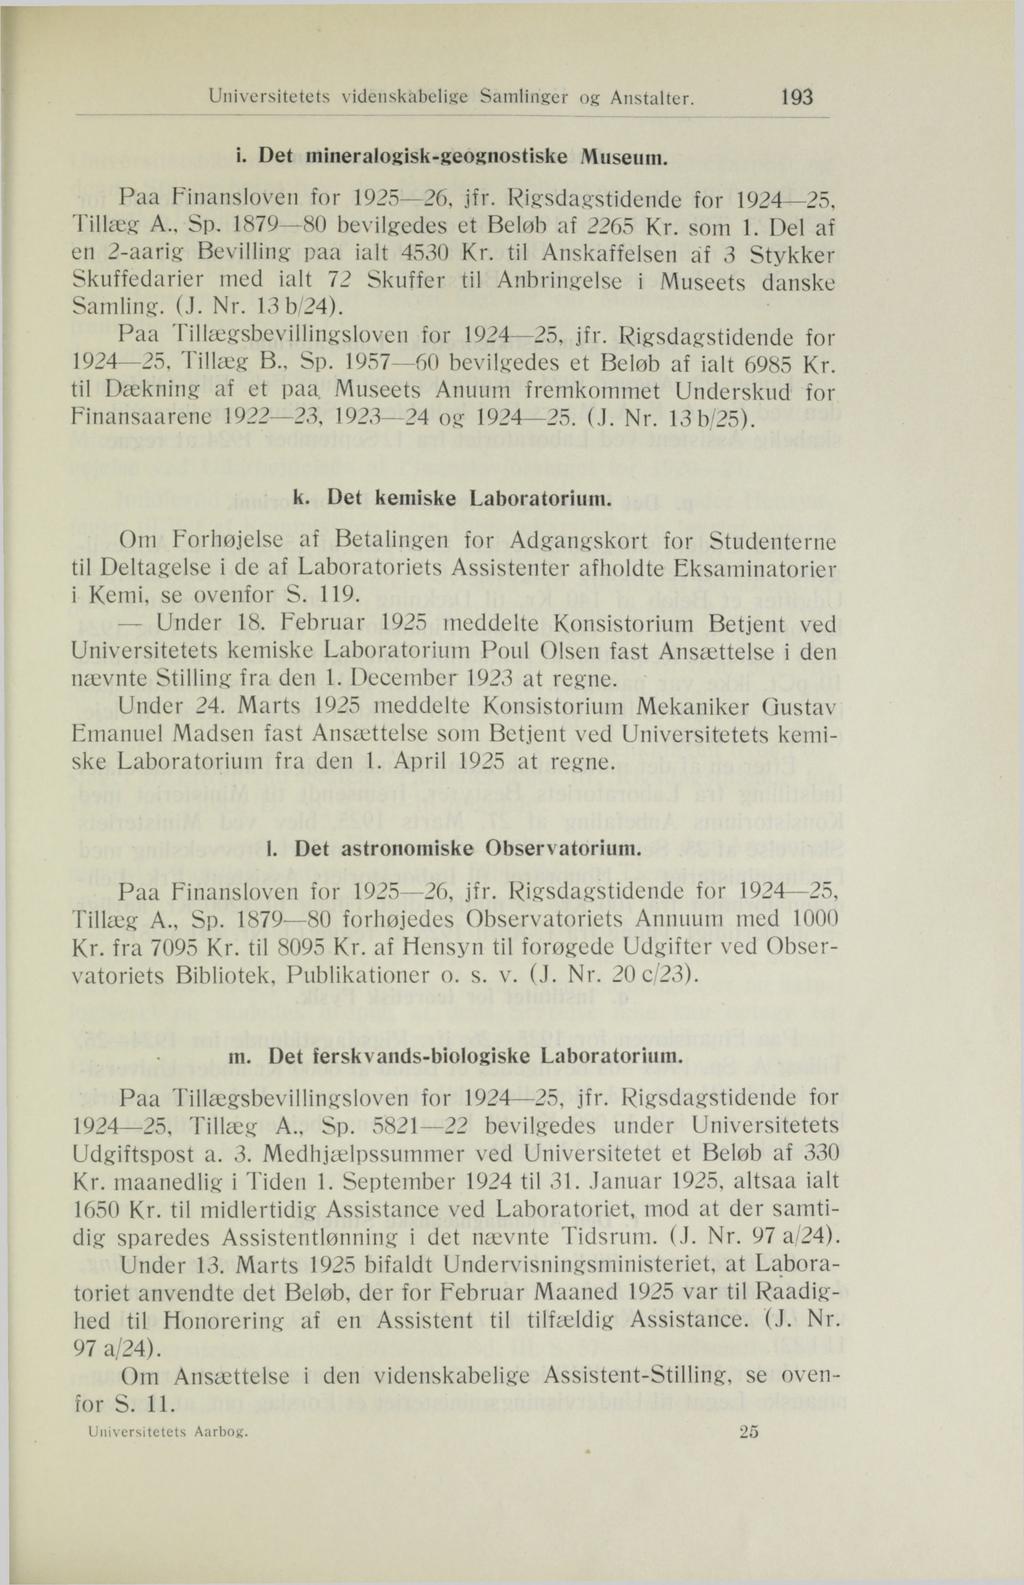 Universitetets videnskabelige Samlinger og Anstalter. 193 i. Det mineralogisk-geognostiske Museum. Tillæg A., Sp. 1879 80 bevilgedes et Beløb af 2265 Kr. som 1.